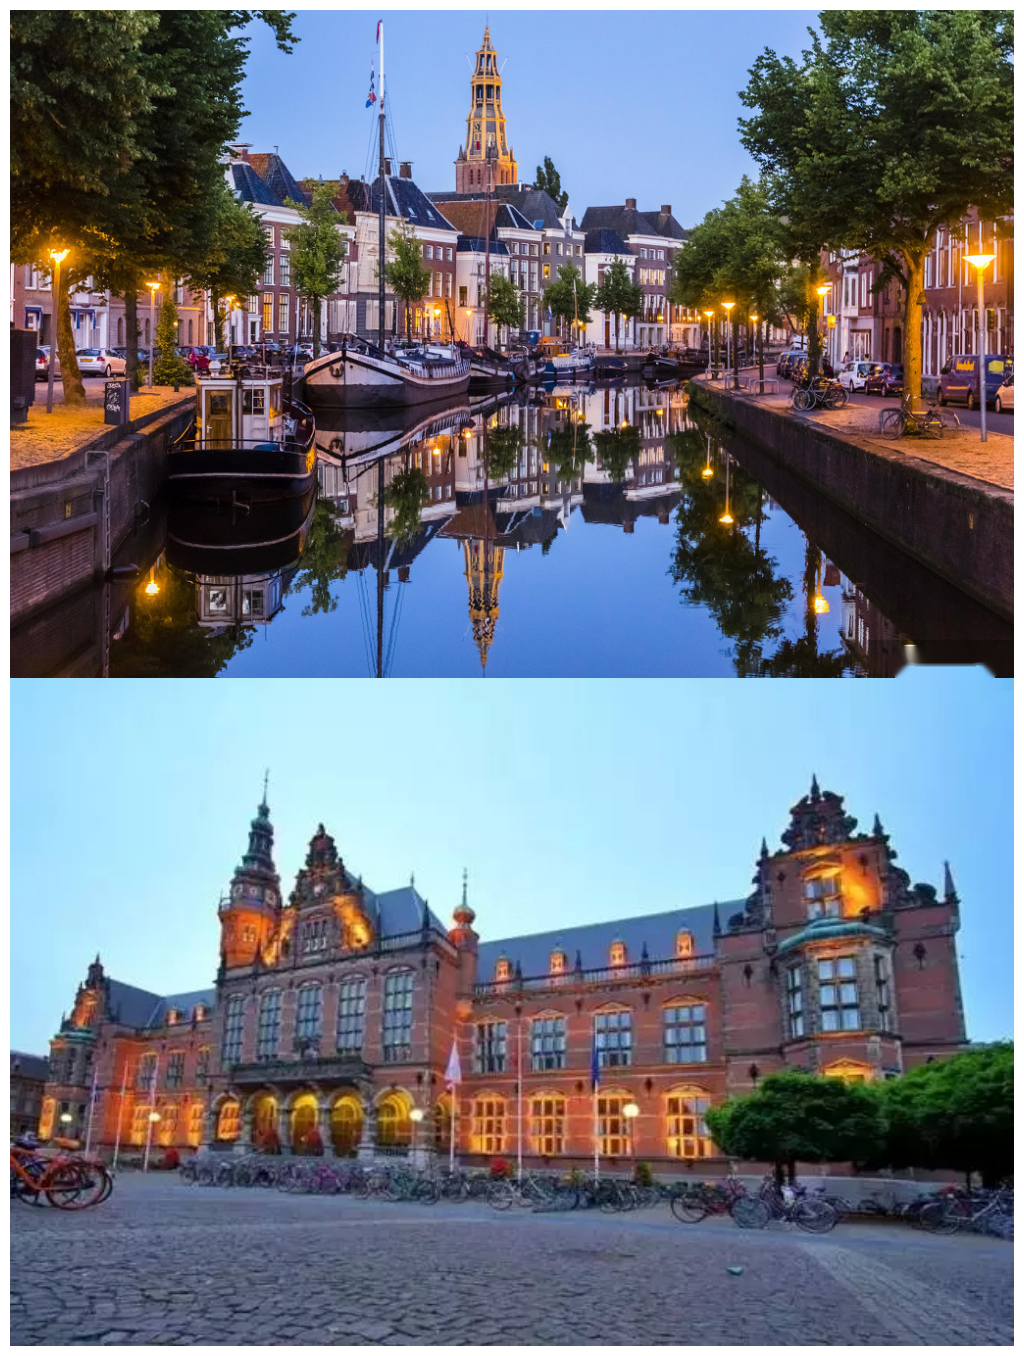 瓦格宁根大学排名全球第100-200之间:阿姆斯特丹大学,格罗宁根大学